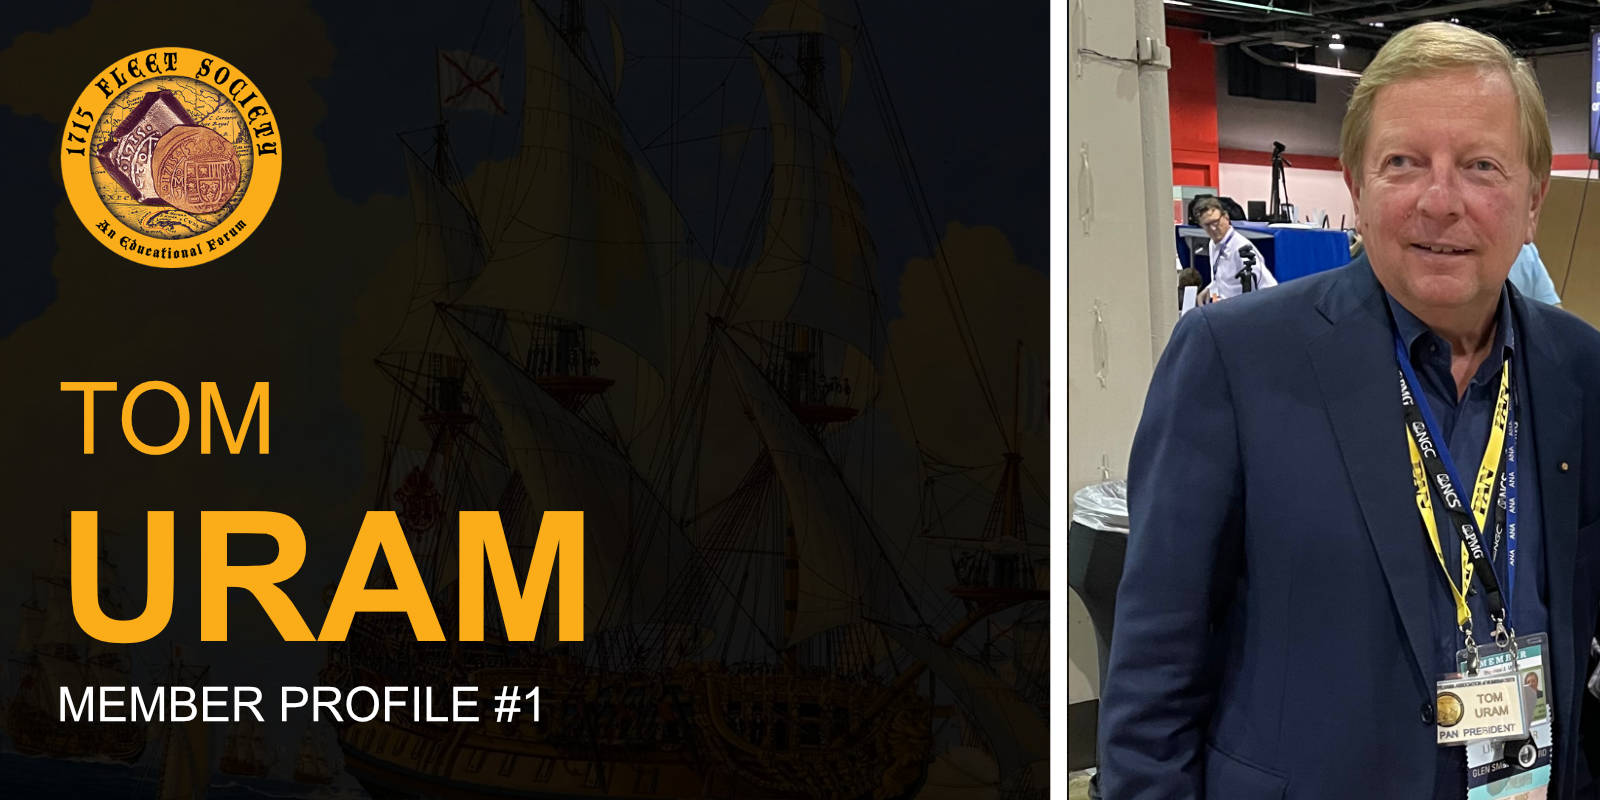 1715 Fleet Society Member Profile Tom Uram